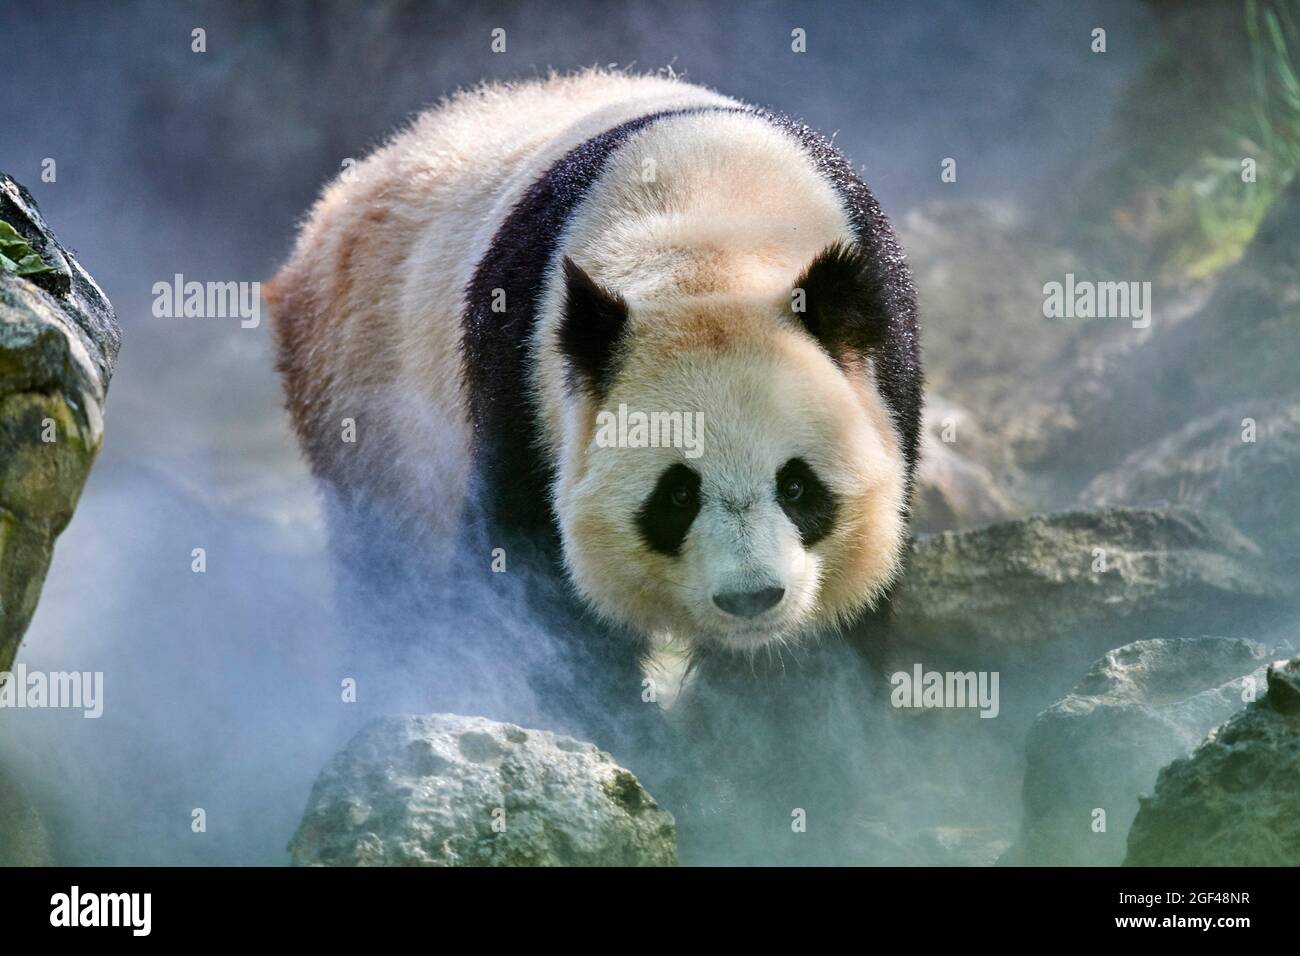 Panda géant (Ailuropoda melanoleuca) femelle Huan Huan dans son enceinte en brume, captive au zoo de Beauval, Saint Aignan sur cher, France. La brume Banque D'Images